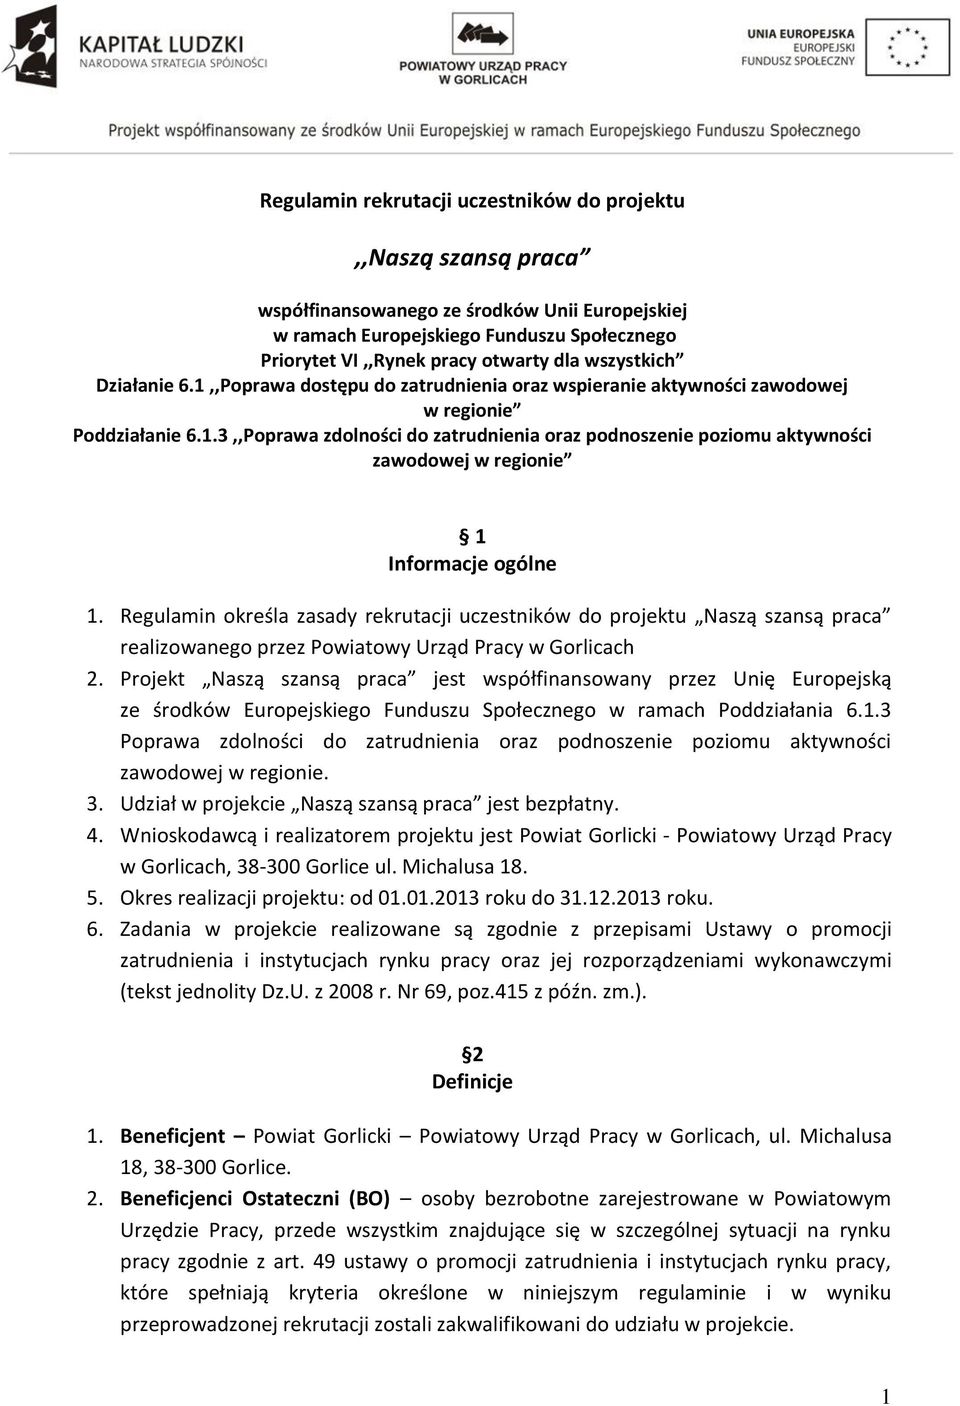 Regulamin określa zasady rekrutacji uczestników do projektu Naszą szansą praca realizowanego przez Powiatowy Urząd Pracy w Gorlicach 2.